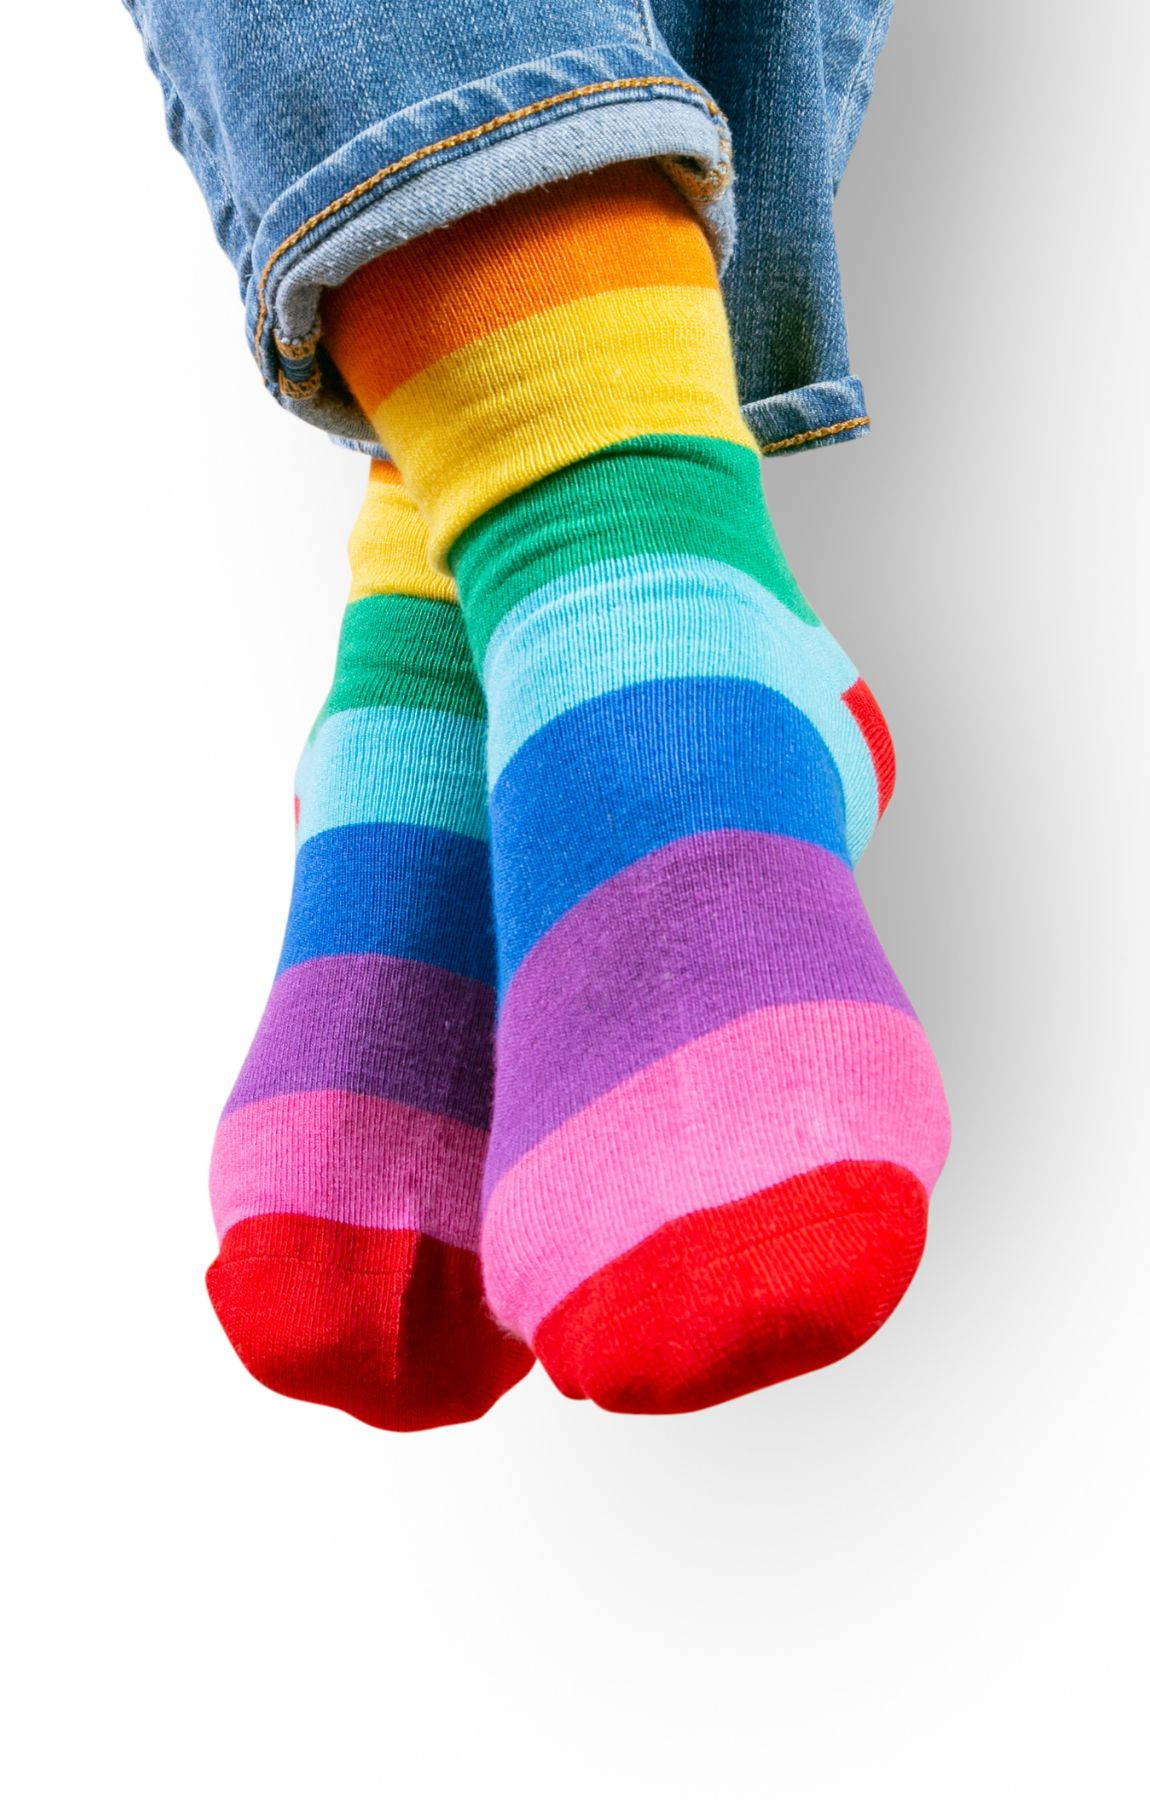 Et grafisk billede af en subtil regnbue LGBT-symbol. Wallpaper